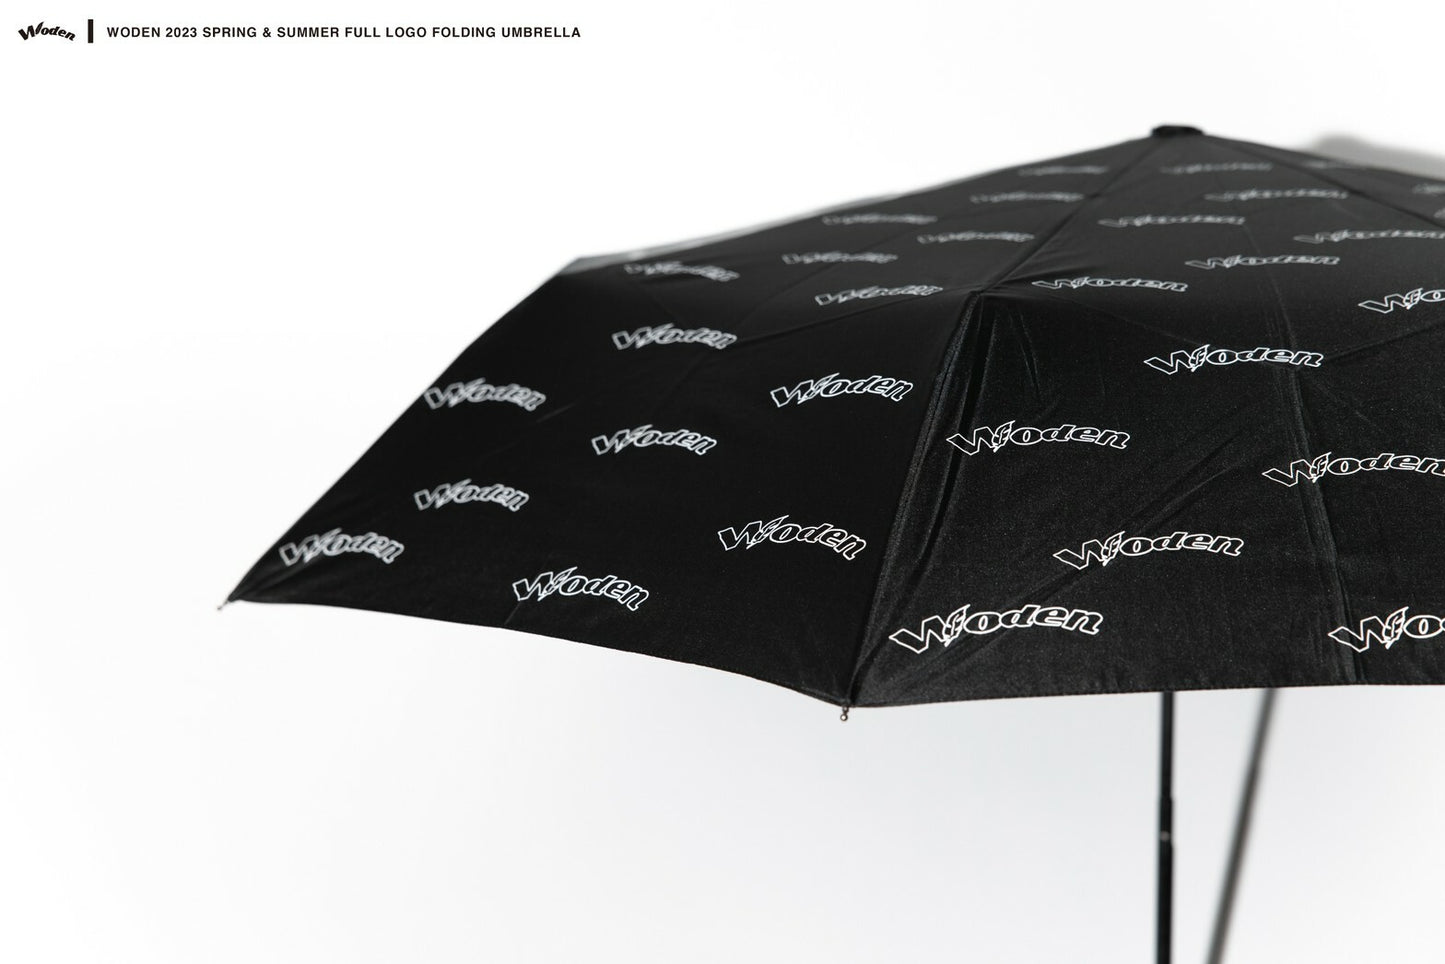 WODEN 2023 Spring & Summer 076 Full LOGO Folding Umbrella